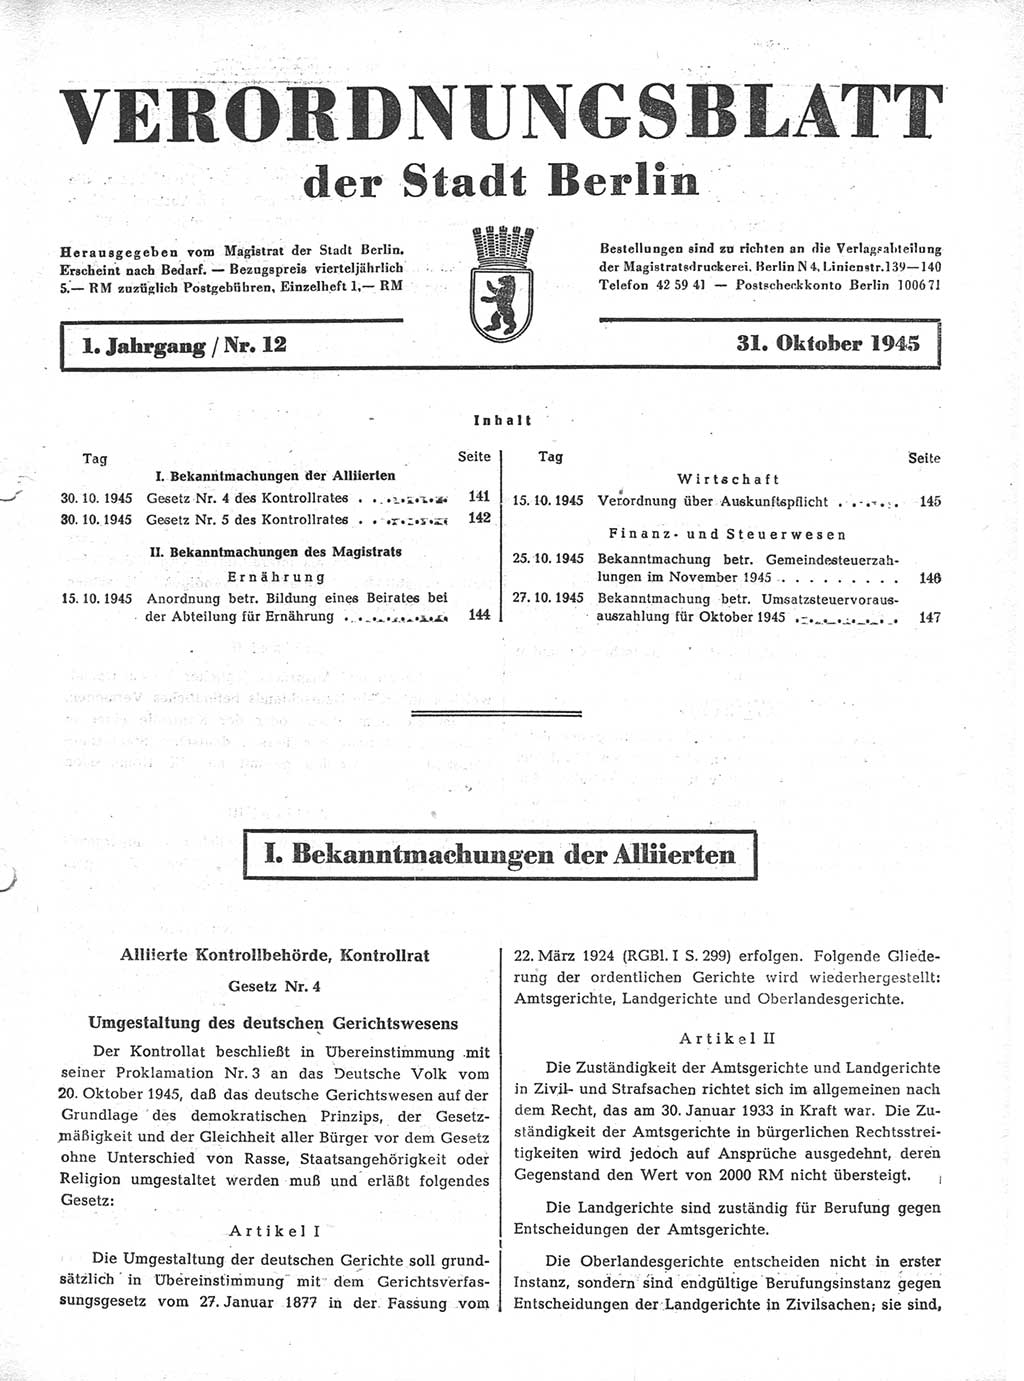 Verordnungsblatt (VOBl.) der Stadt Berlin 1945, Seite 141 (VOBl. Bln. 1945, S. 141)